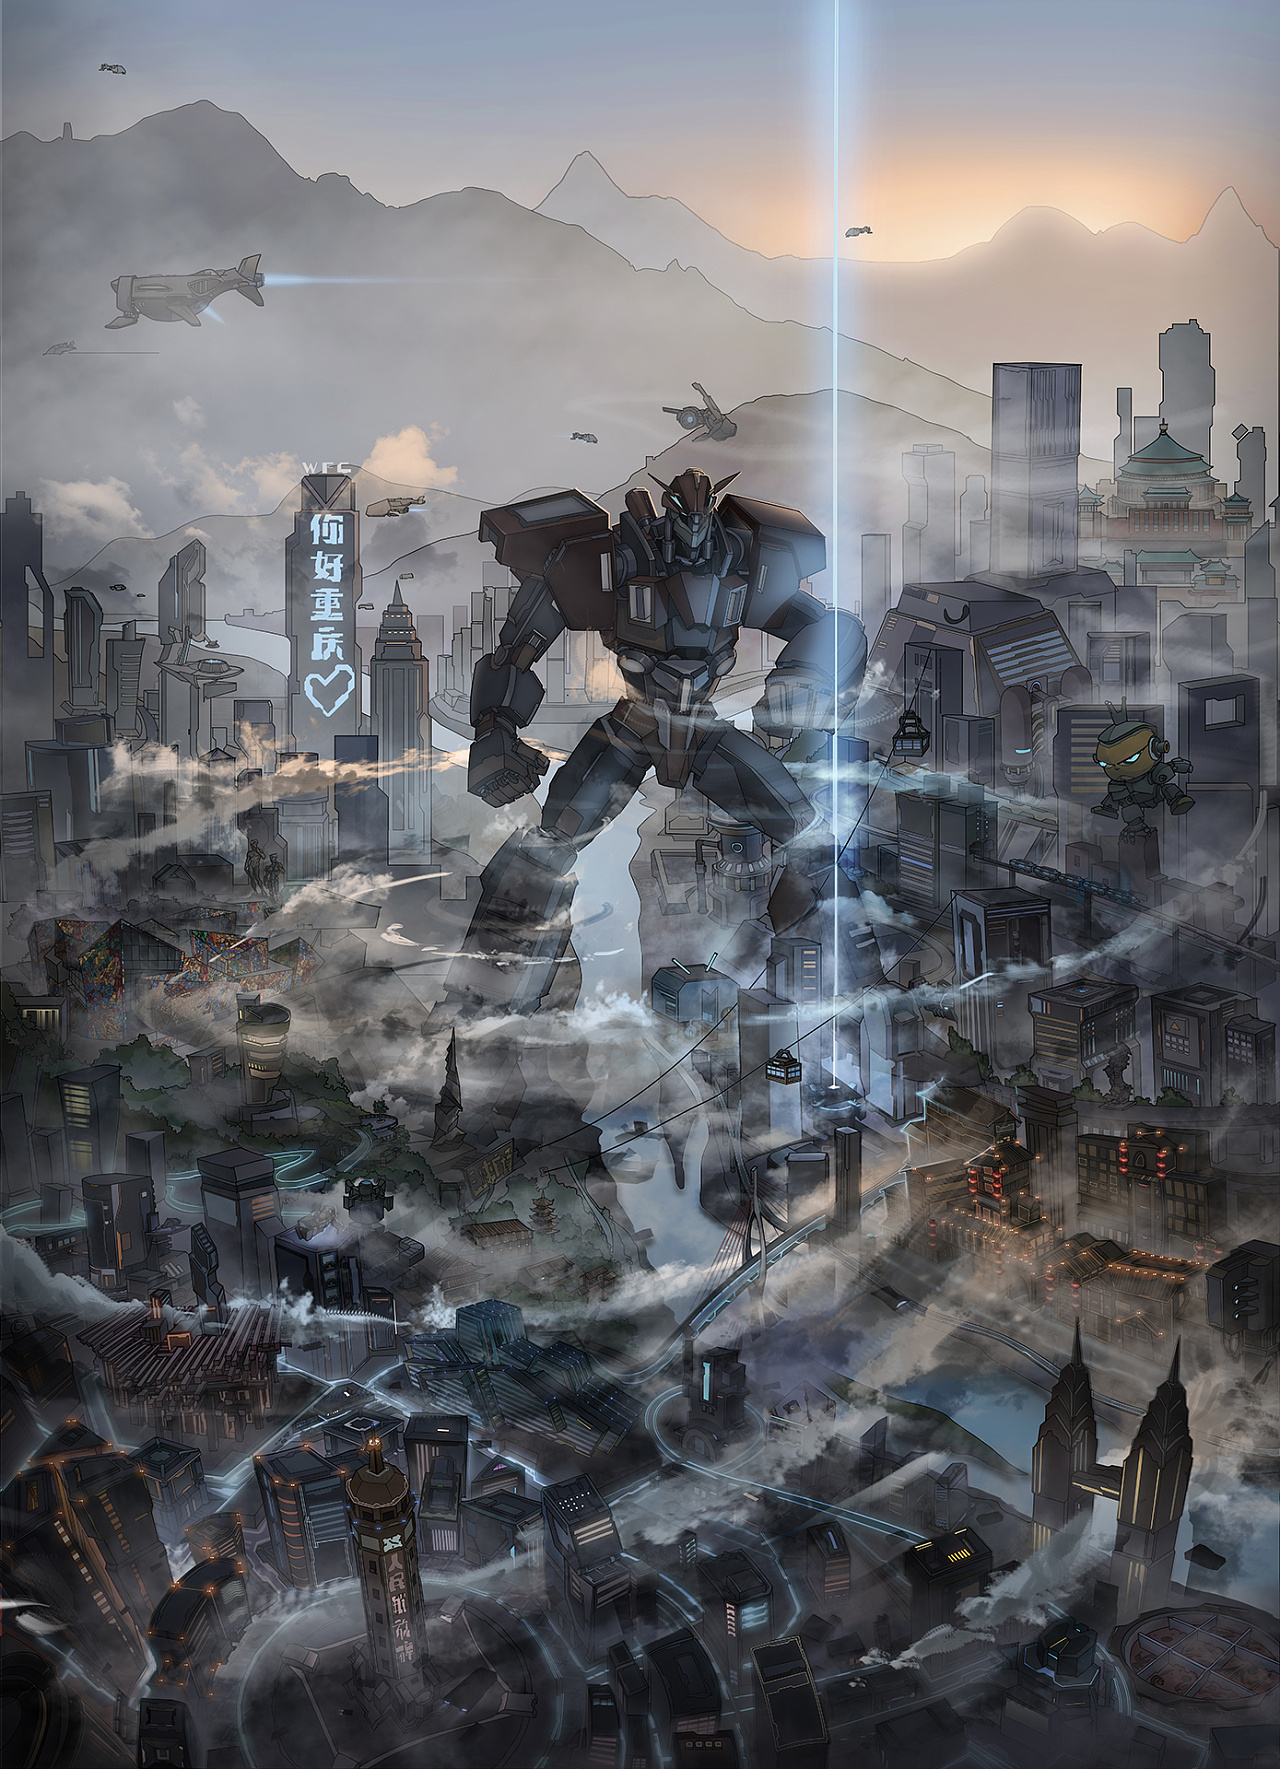 最近为门罗机器人绘制的一张微缩重庆未来城市的场景插画,我把很多